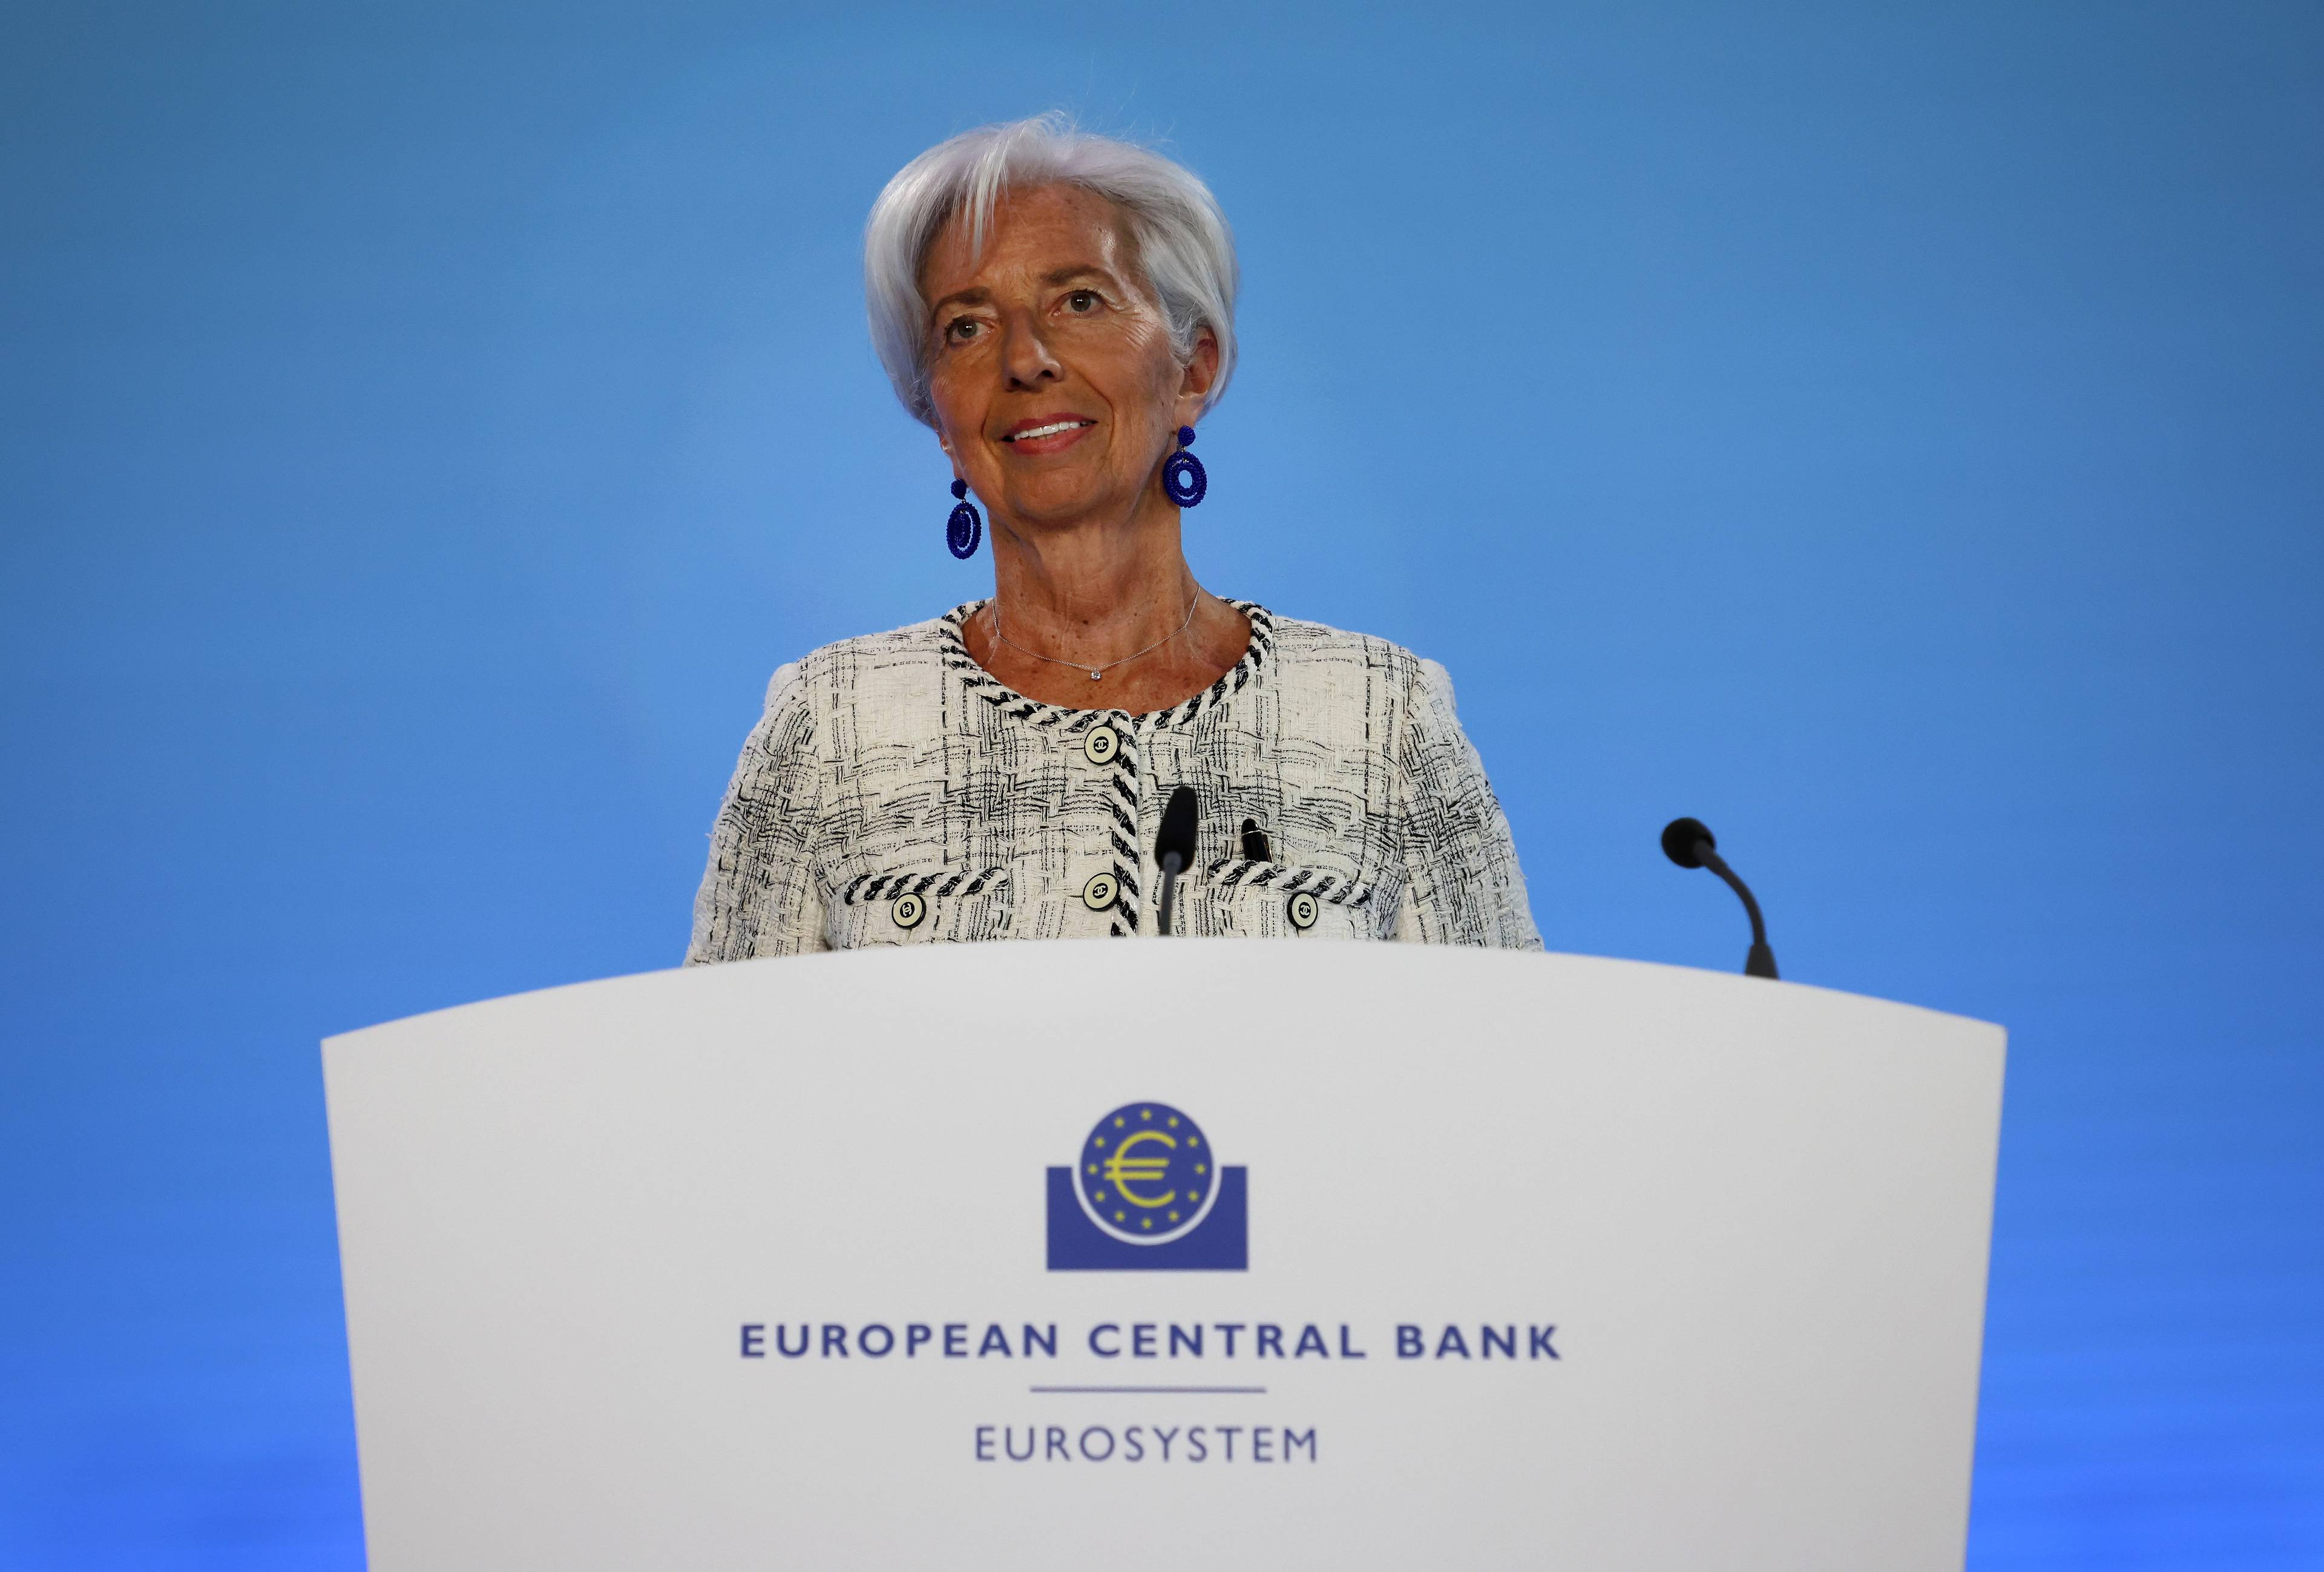 Siwowłosa kobieta w jasnej garsonce (prezeska Lagarde) przy mówinicy z logiem Europejskiego Banku Centralnego